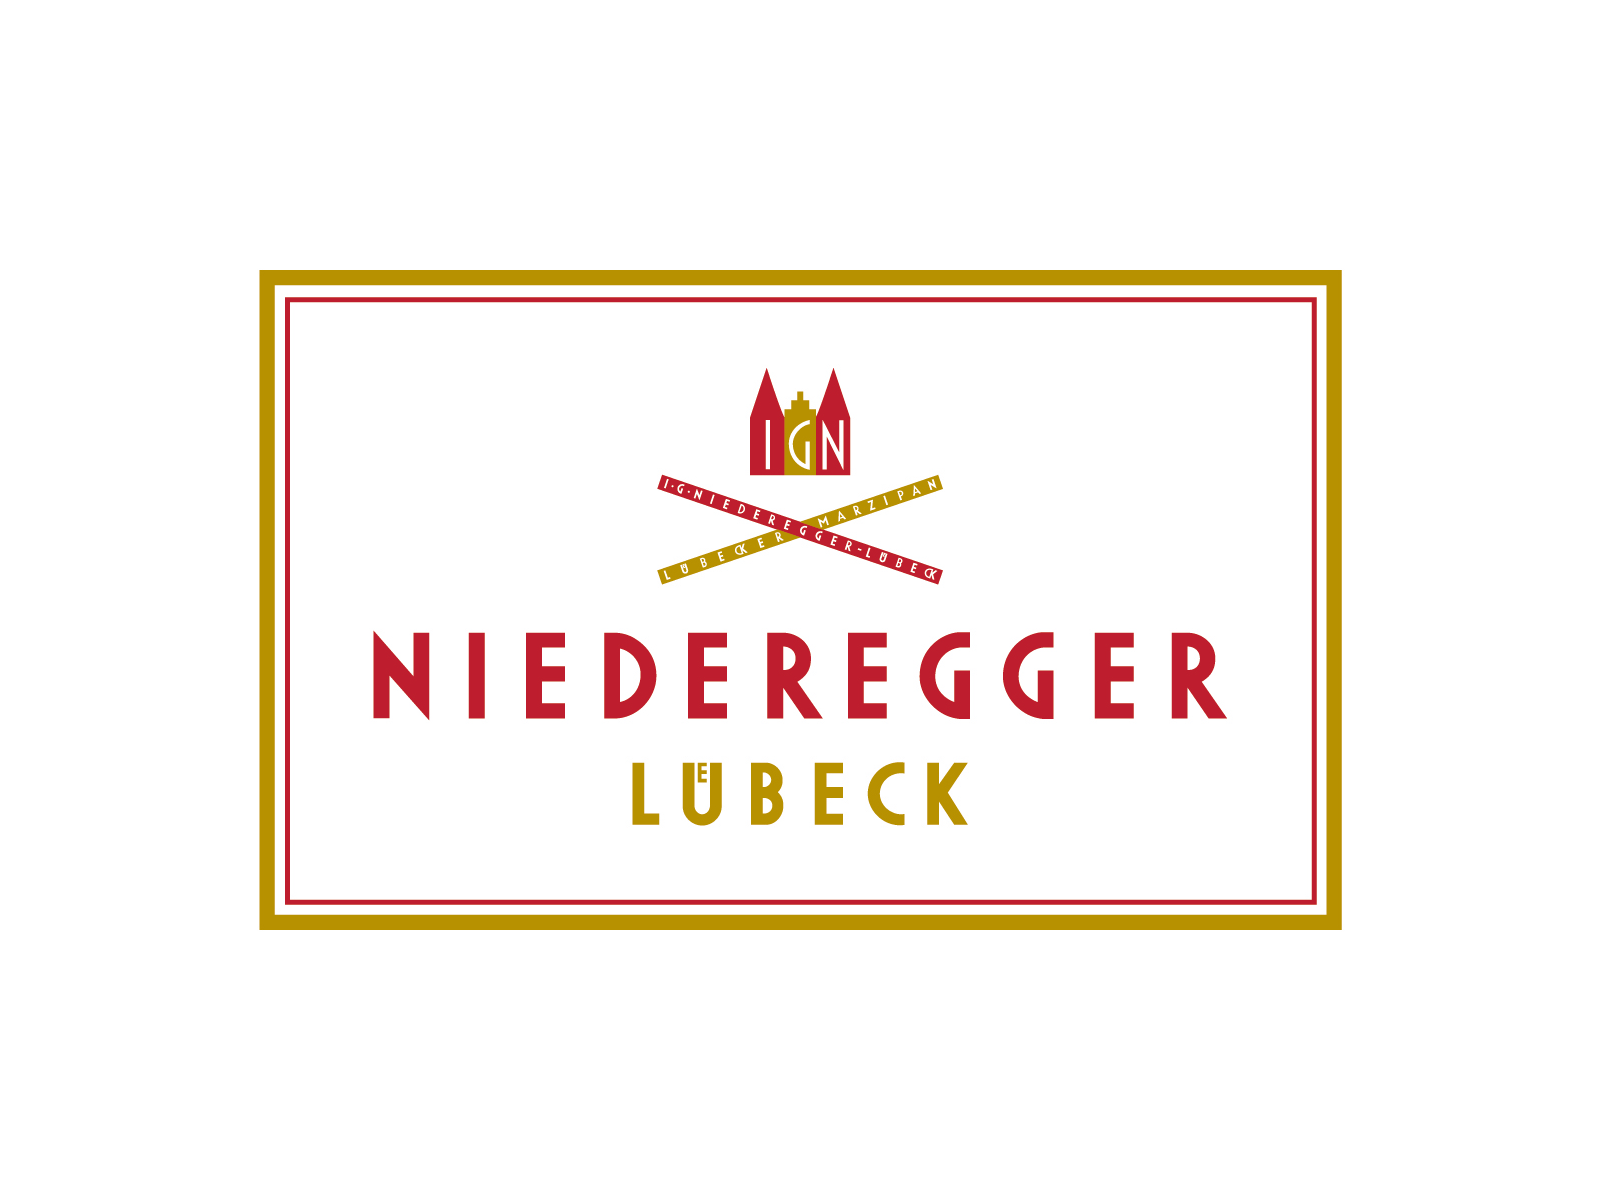 J.G. Niederegger GmbH & Co.KG